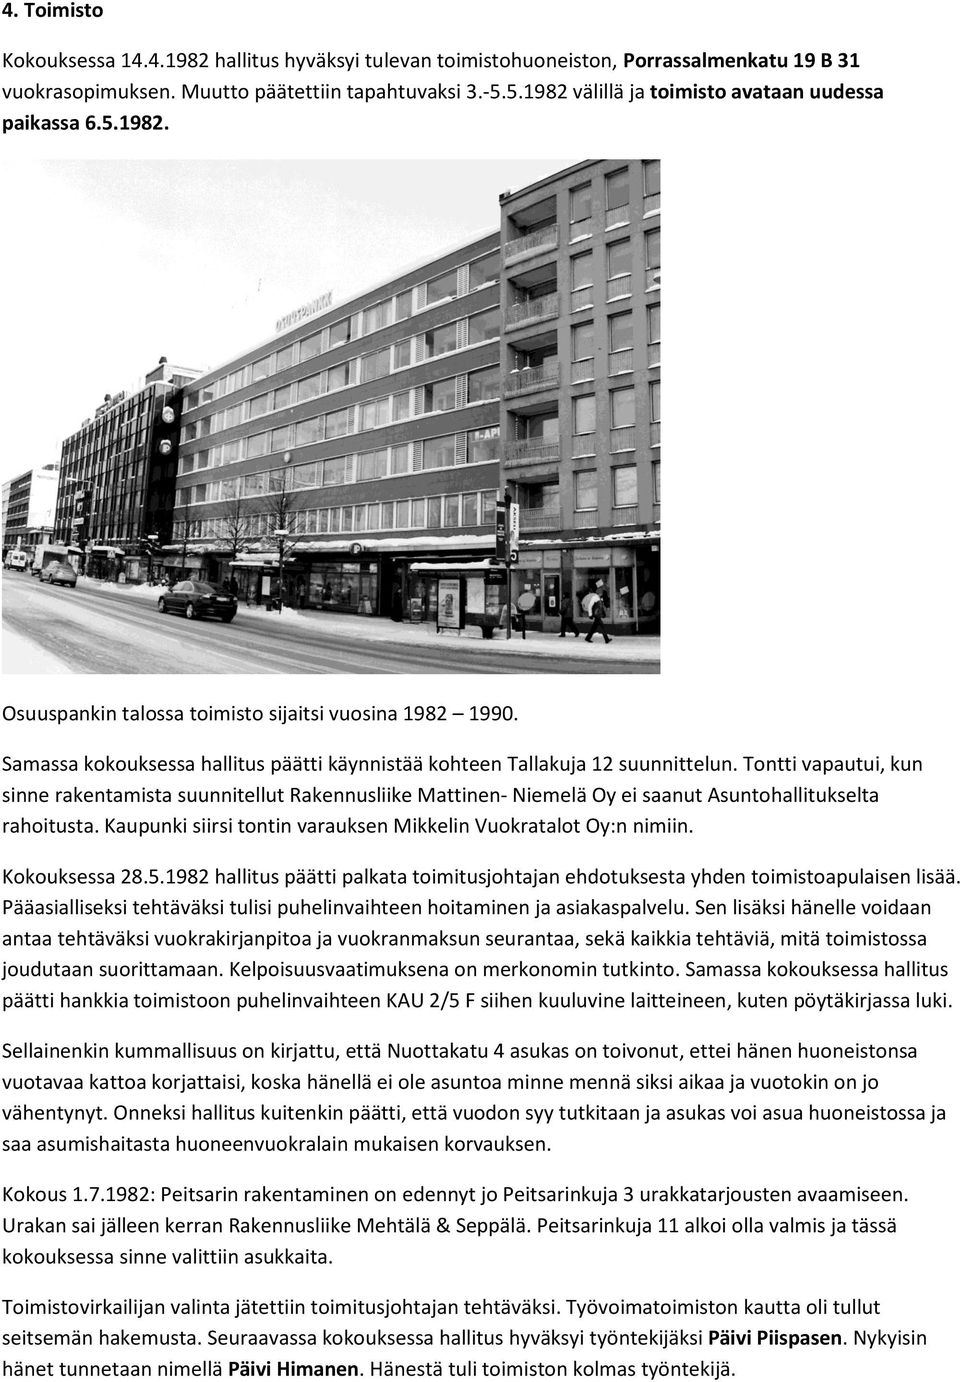 Tontti vapautui, kun sinne rakentamista suunnitellut Rakennusliike Mattinen- Niemelä Oy ei saanut Asuntohallitukselta rahoitusta. Kaupunki siirsi tontin varauksen Mikkelin Vuokratalot Oy:n nimiin.